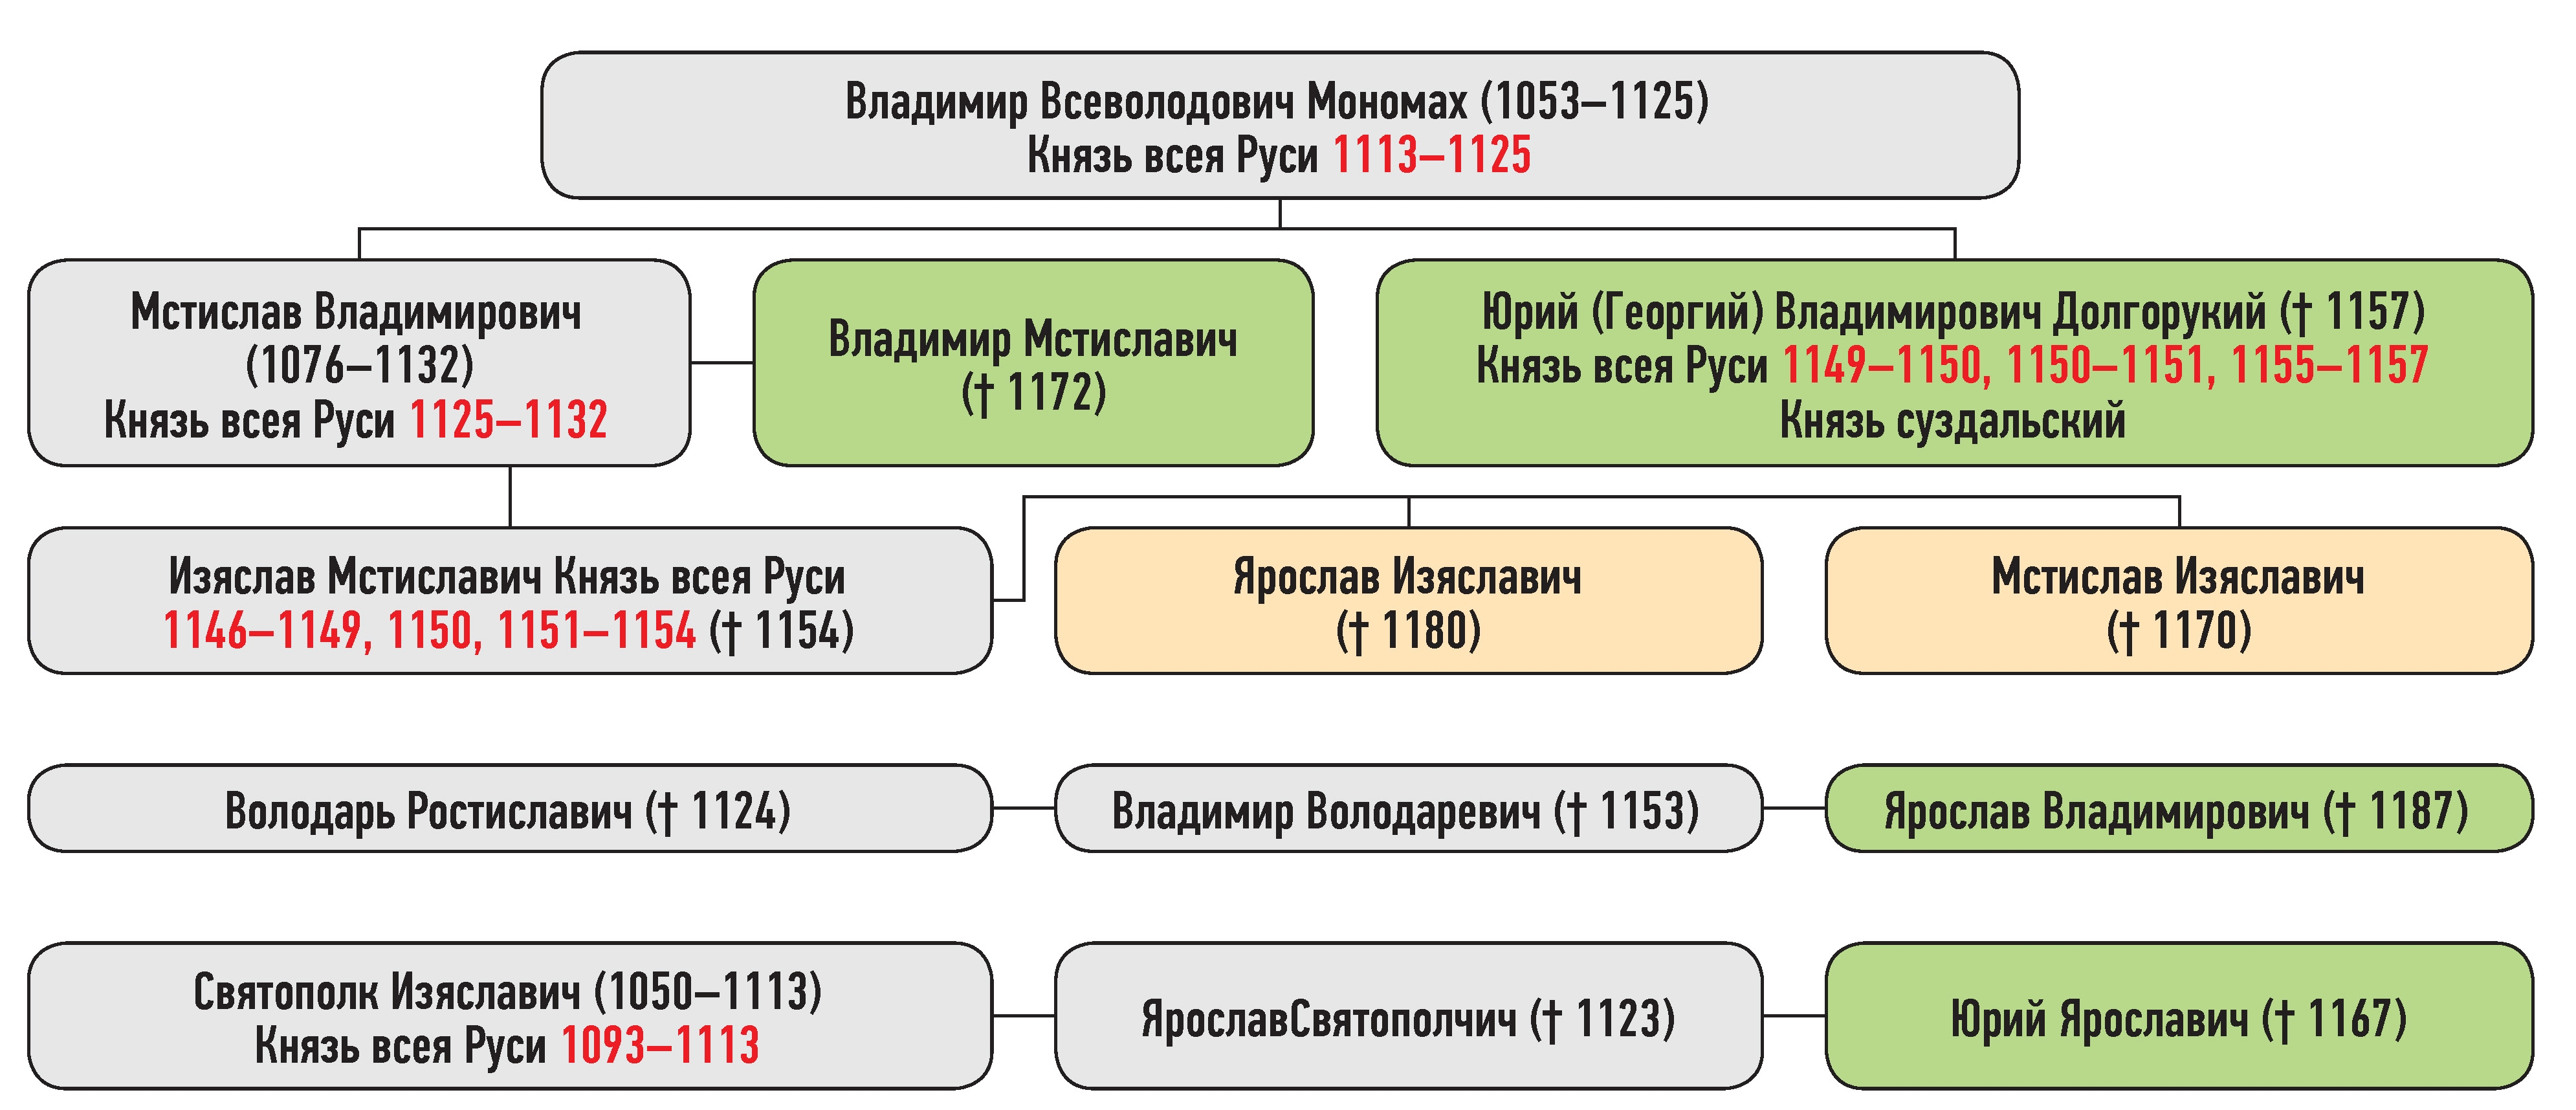 Генеалогическая схема к усобице союзников Юрия Владимировича и Мстислава Изяславича осенью 1155 г.